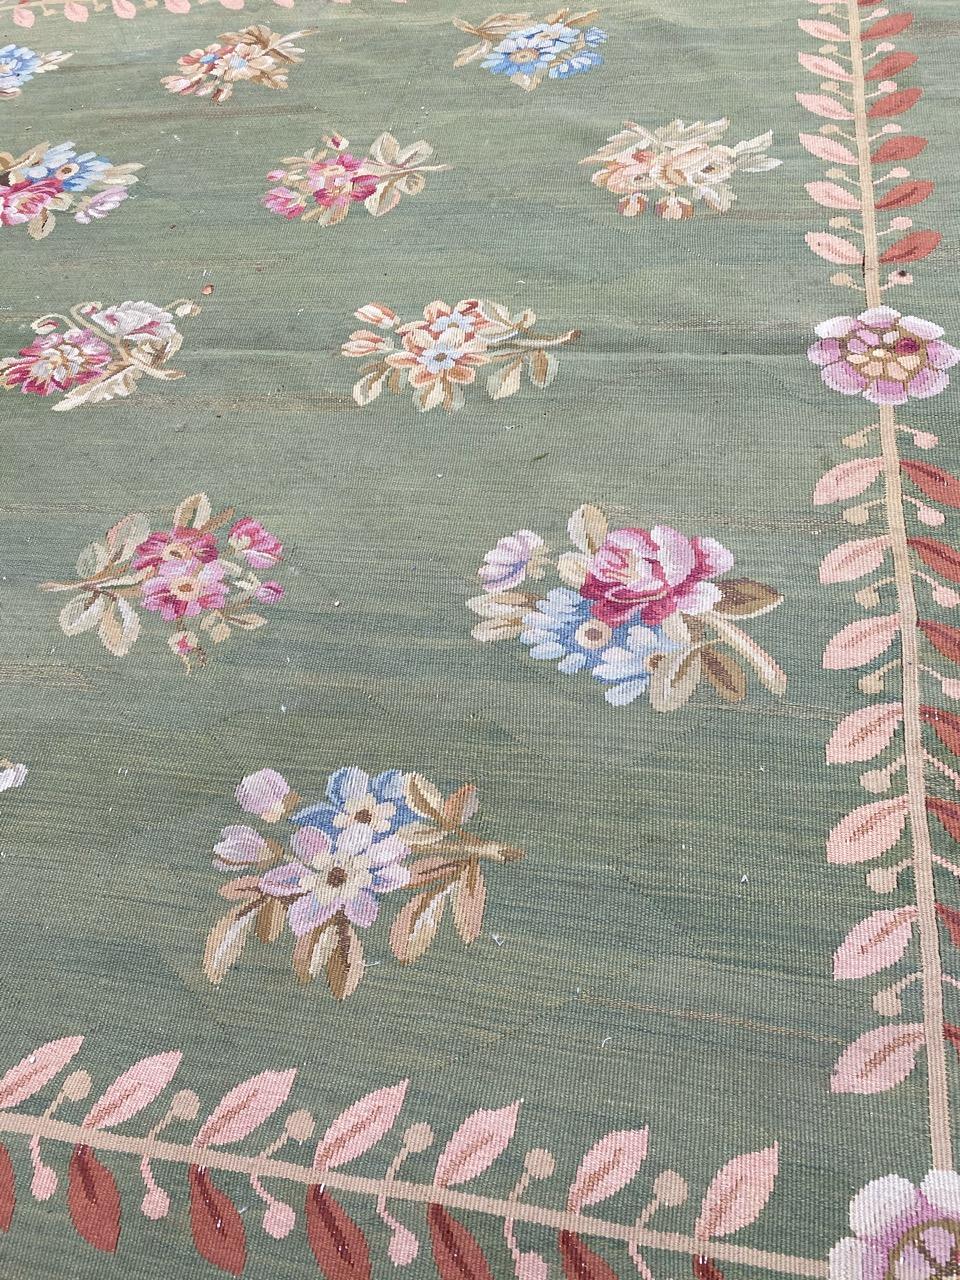 Très beau tapis d'Aubusson français de la fin du XIXe siècle, avec un beau motif floral de style Empire (Premier Empire français du début du XIXe siècle), et une belle couleur de fond verte, caractéristique de ce style, avec du rose et du bleu,